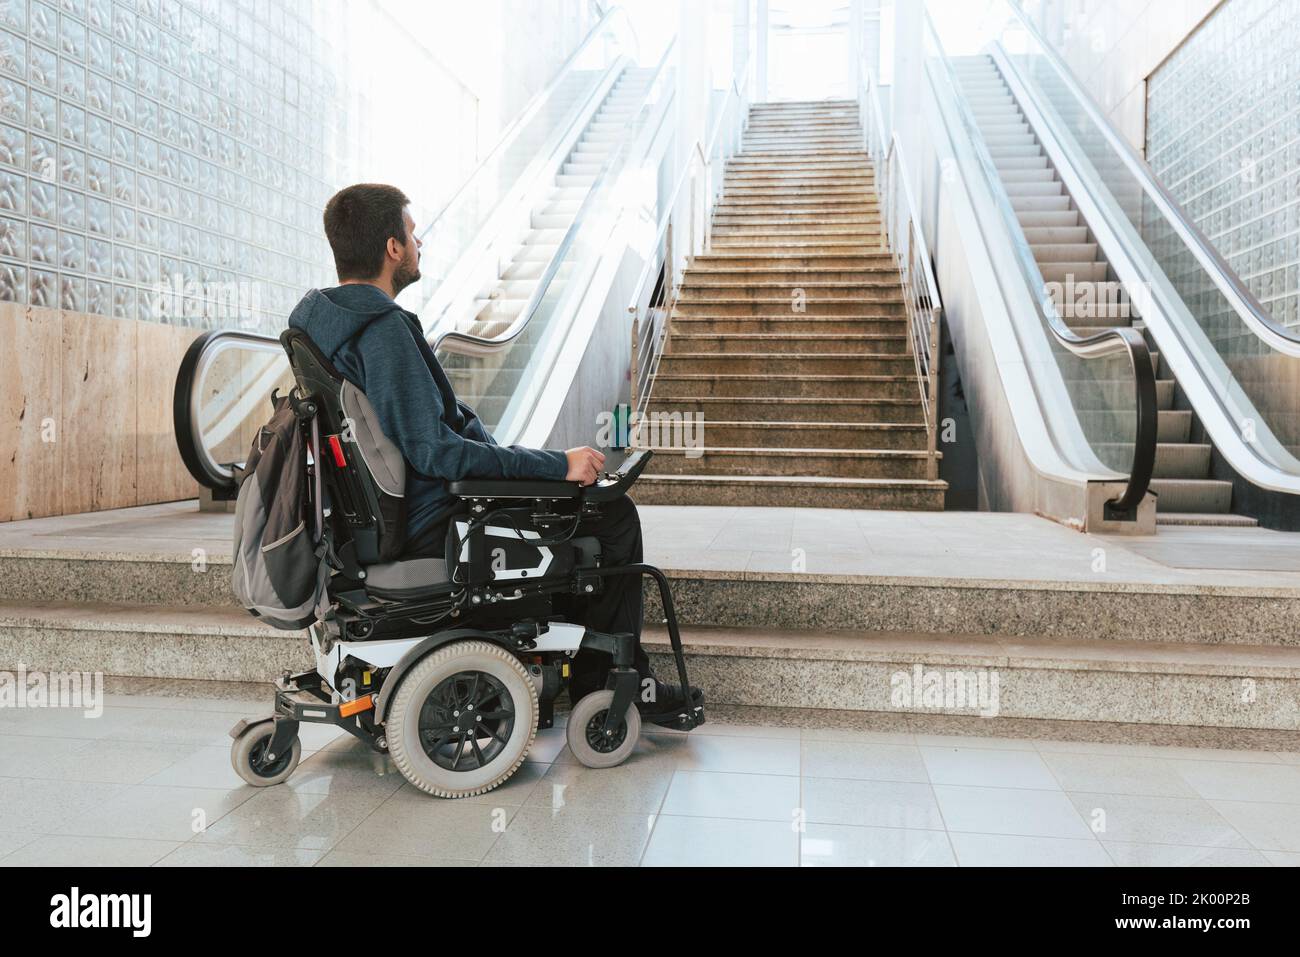 Ein Mann mit Behinderung im Rollstuhl hielt vor der Treppe an und machte sich auf architektonische Barrieren und Probleme mit der Zugänglichkeit aufmerksam Stockfoto